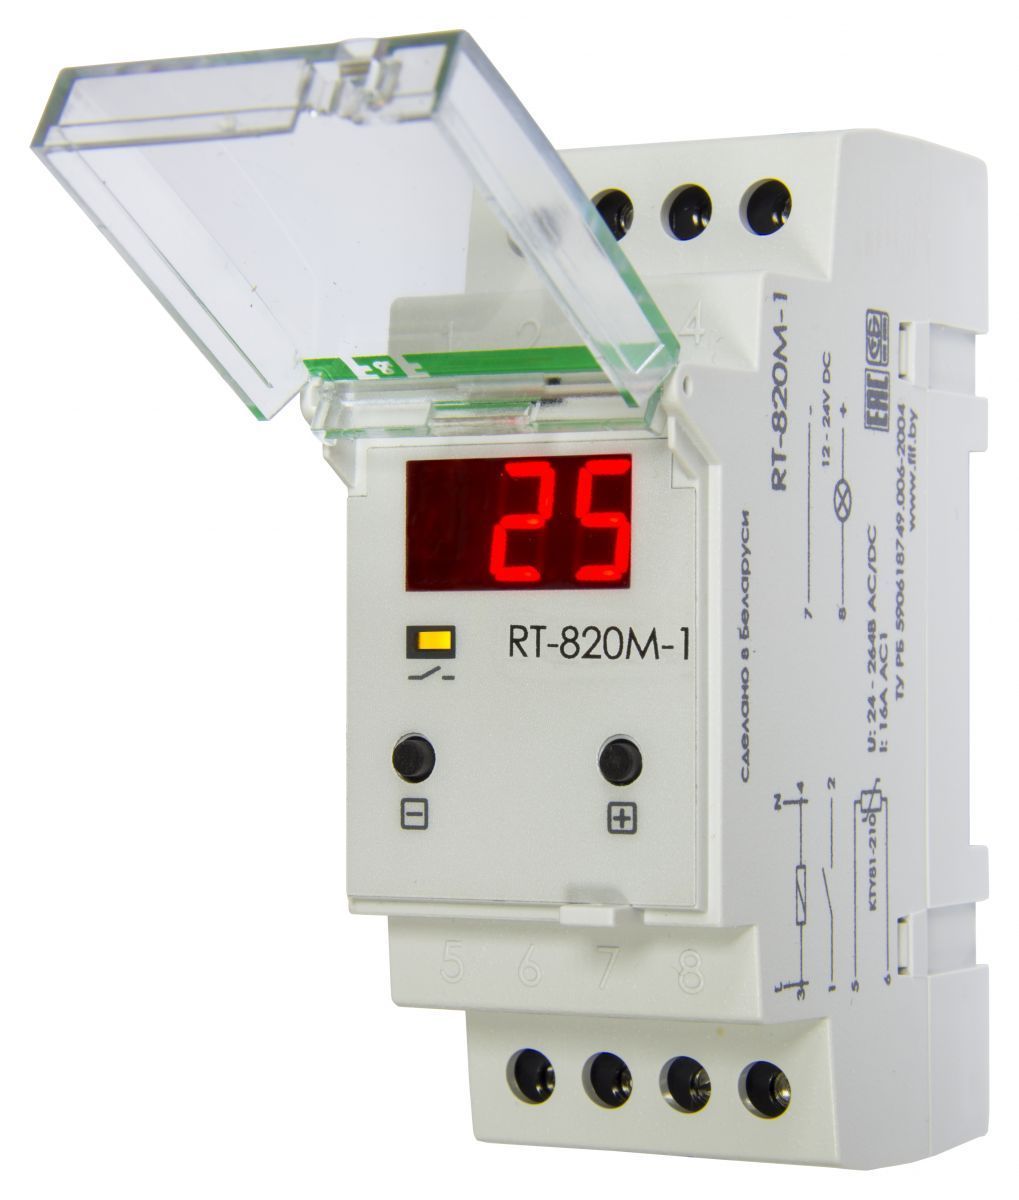 Регулятор температуры RT-820 M-1